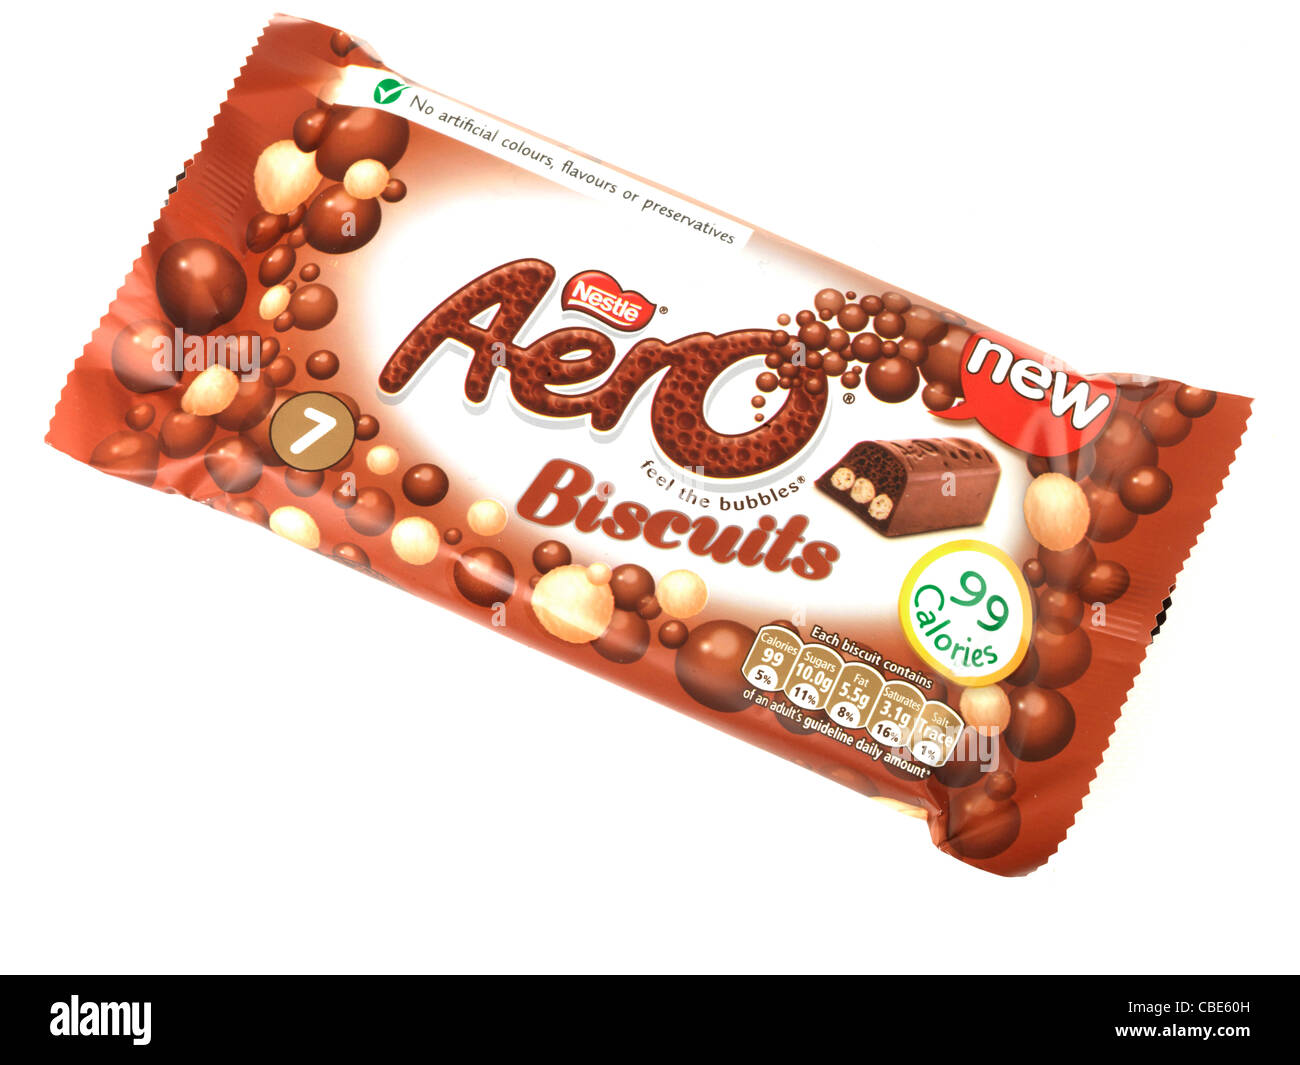 Aero Biscuit Chocolate Bar Stock Photo